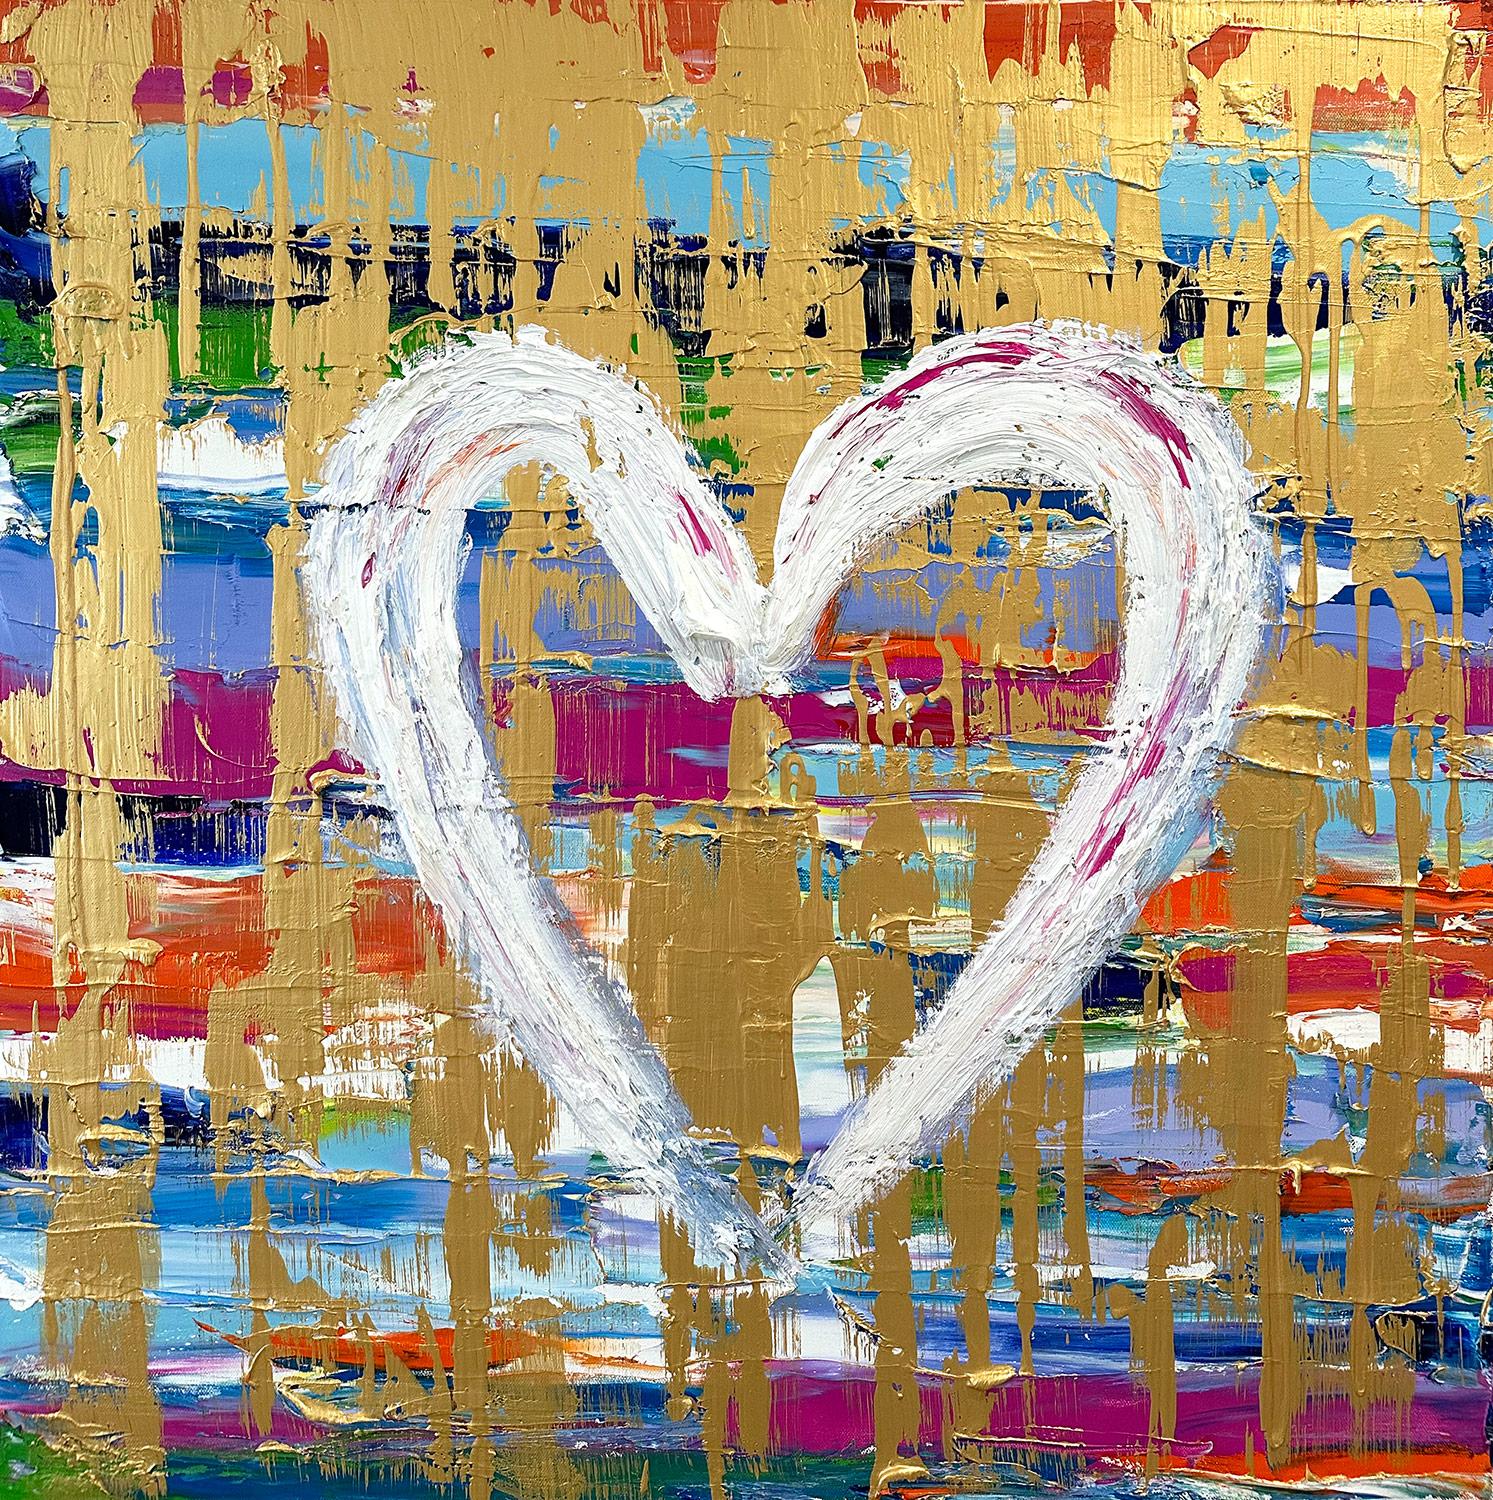 Abstract Painting Cindy Shaoul - Toile contemporaine à la peinture à l'huile multicolore et dorée "My Love at First Sight Heart" (Mon cœur au premier regard)